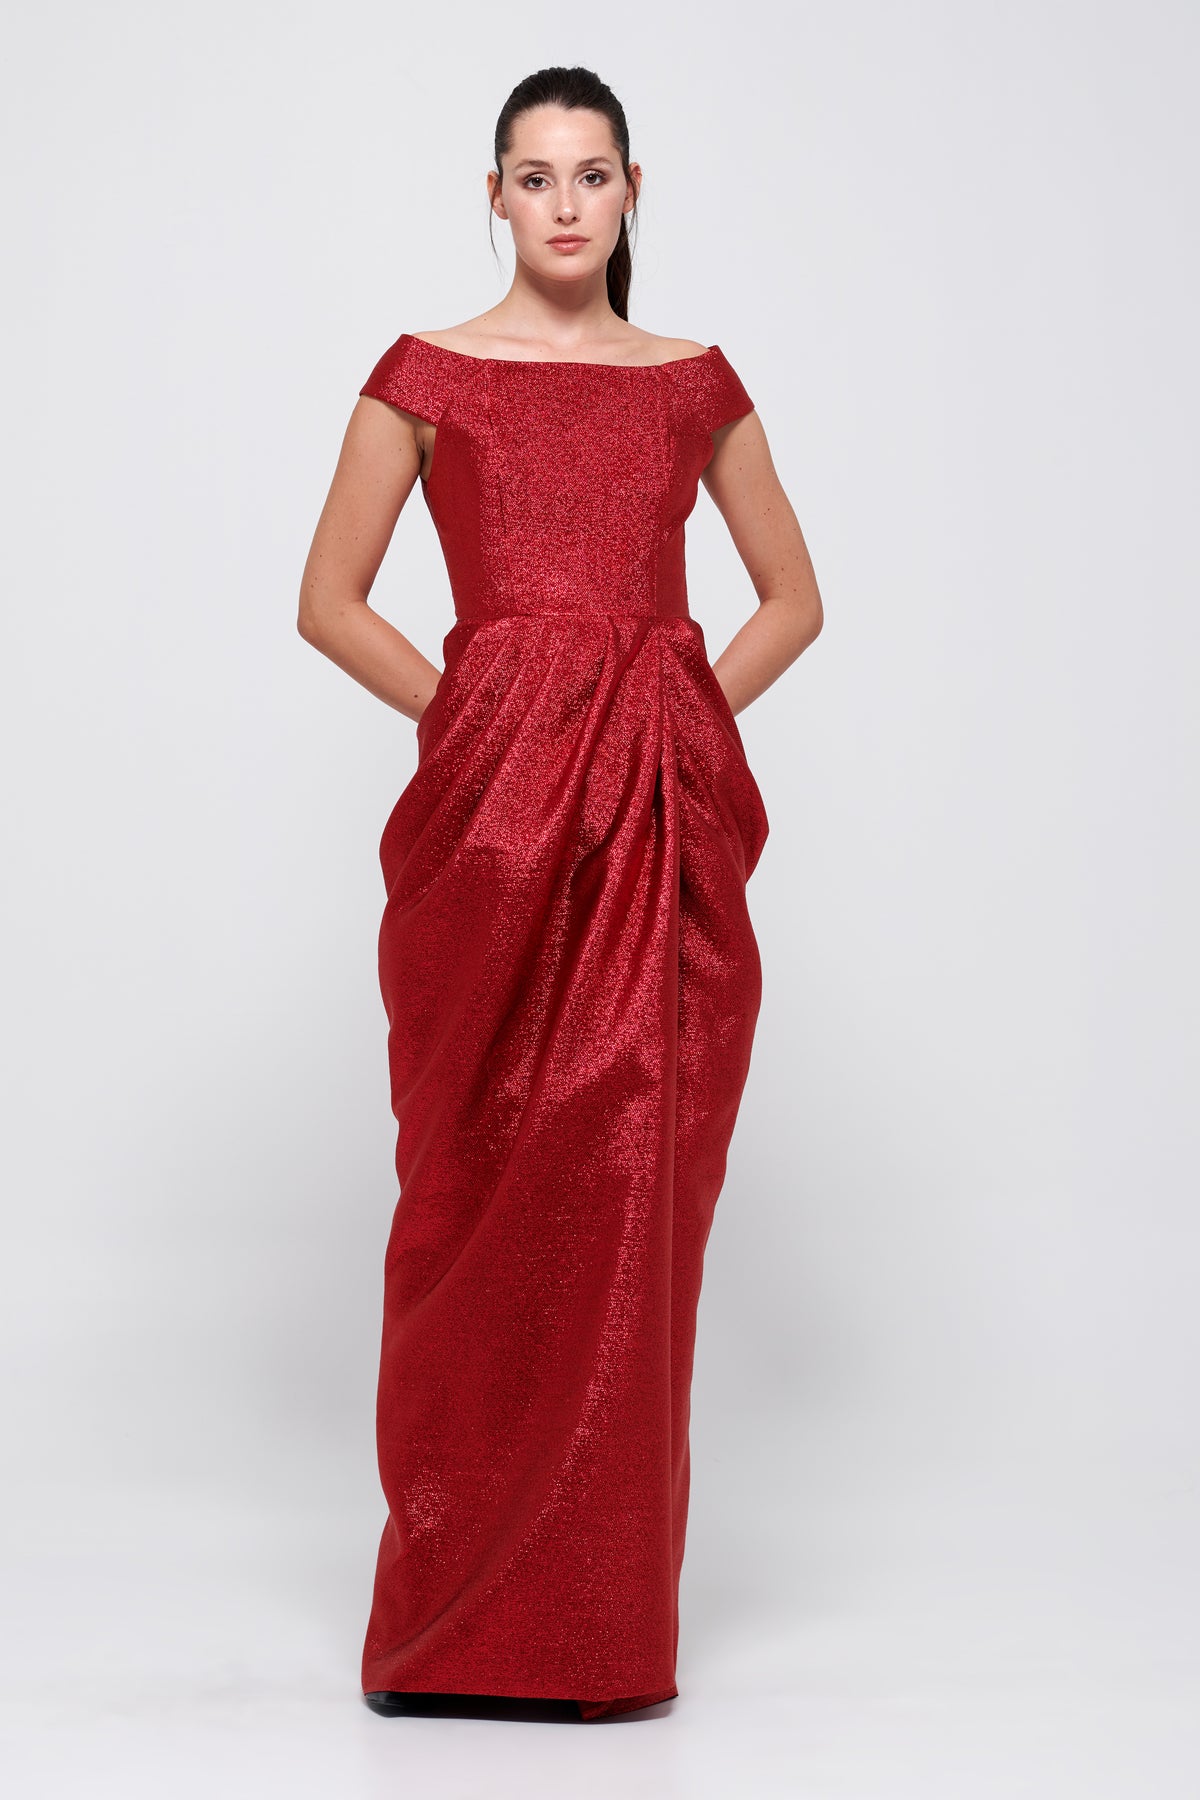 Off-The-Shoulder Red Long Dress